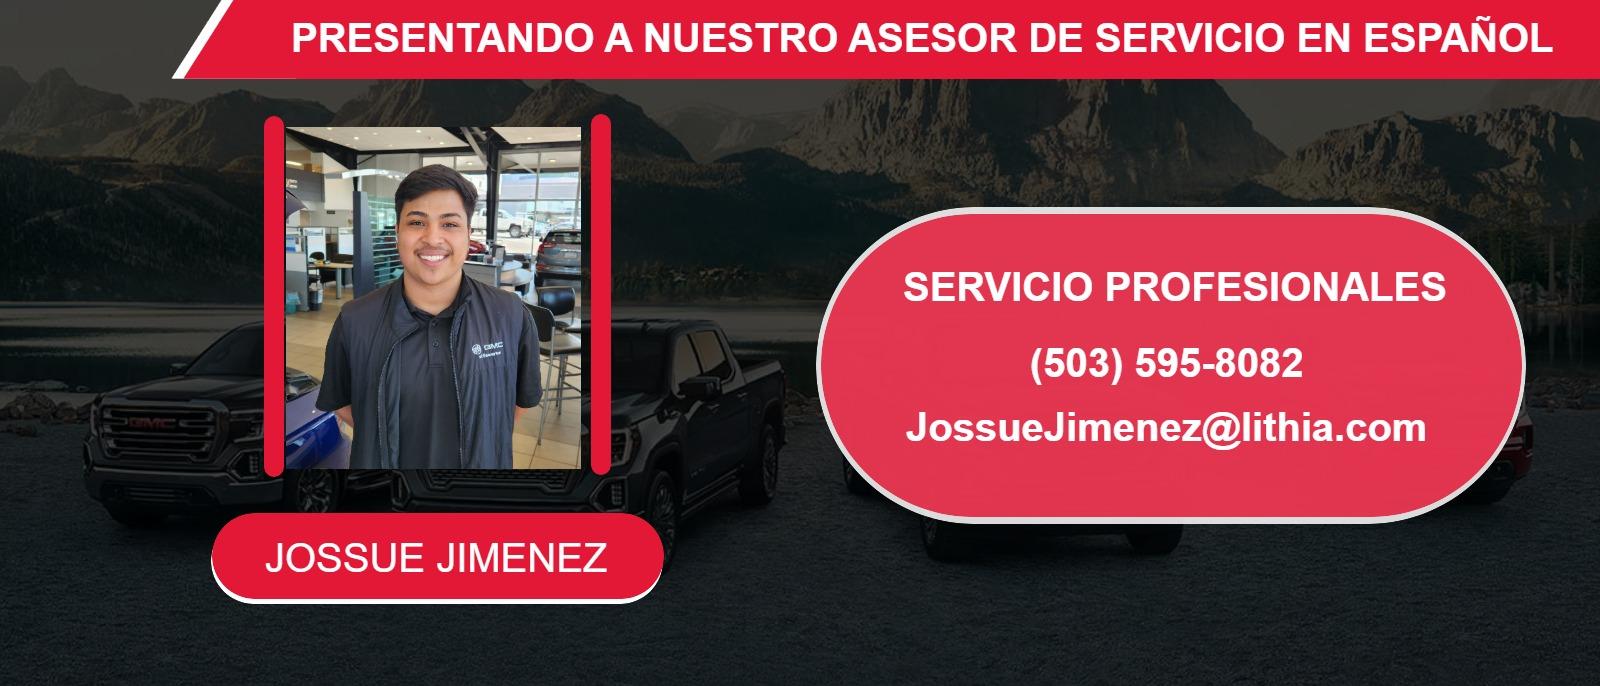 PRESENTANDO A NUESTRO ASESOR DE SERVICIO EN ESPAÑOL
JOSSUE JIMENEZ
(503) 595-8082
JossueJimenez@lithia.com